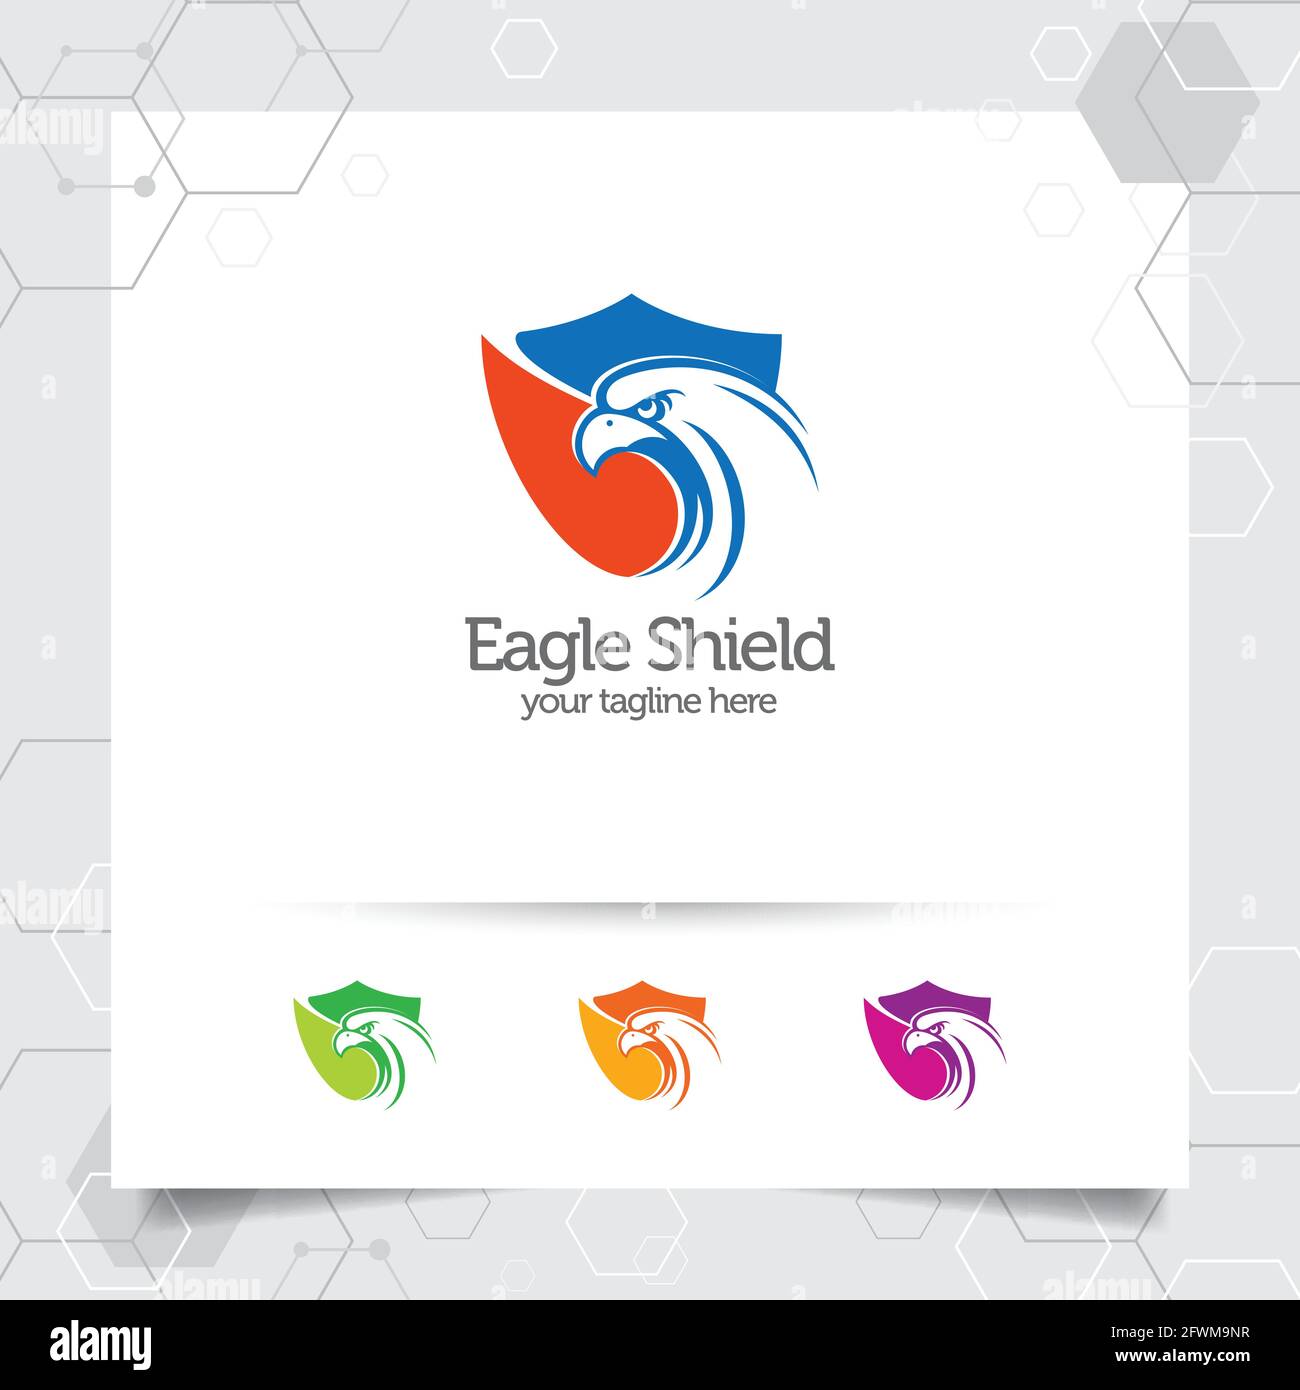 Eagle Shield Logo Vektor-Design mit Konzept des Sicherheitsschutzes und Adler Kopf Symbol Illustration für Datenschutz, Privatsphäre-Sperre und Systemsicherheit. Stock Vektor